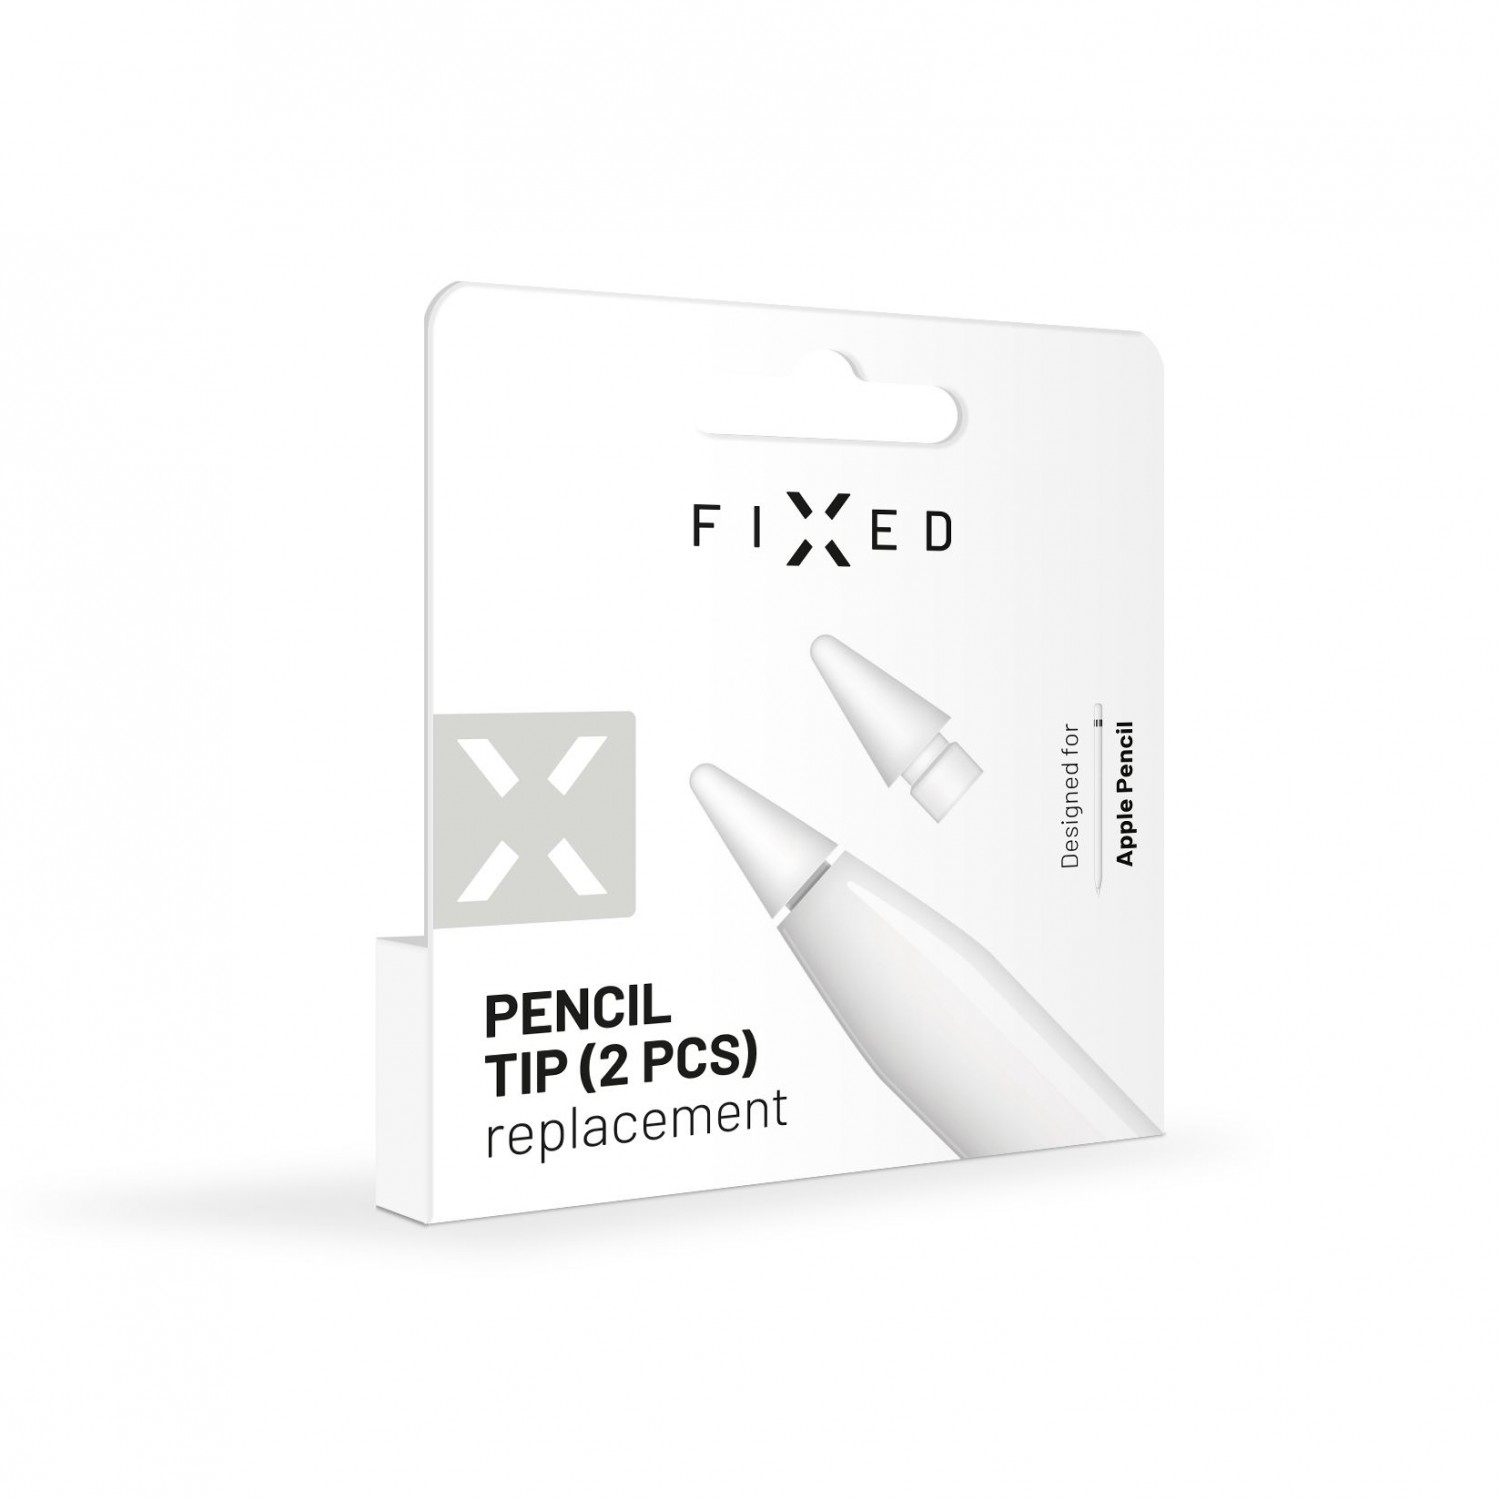 Náhradní hroty FIXED Pencil Tips pro Apple Pencil, 2ks, bílá